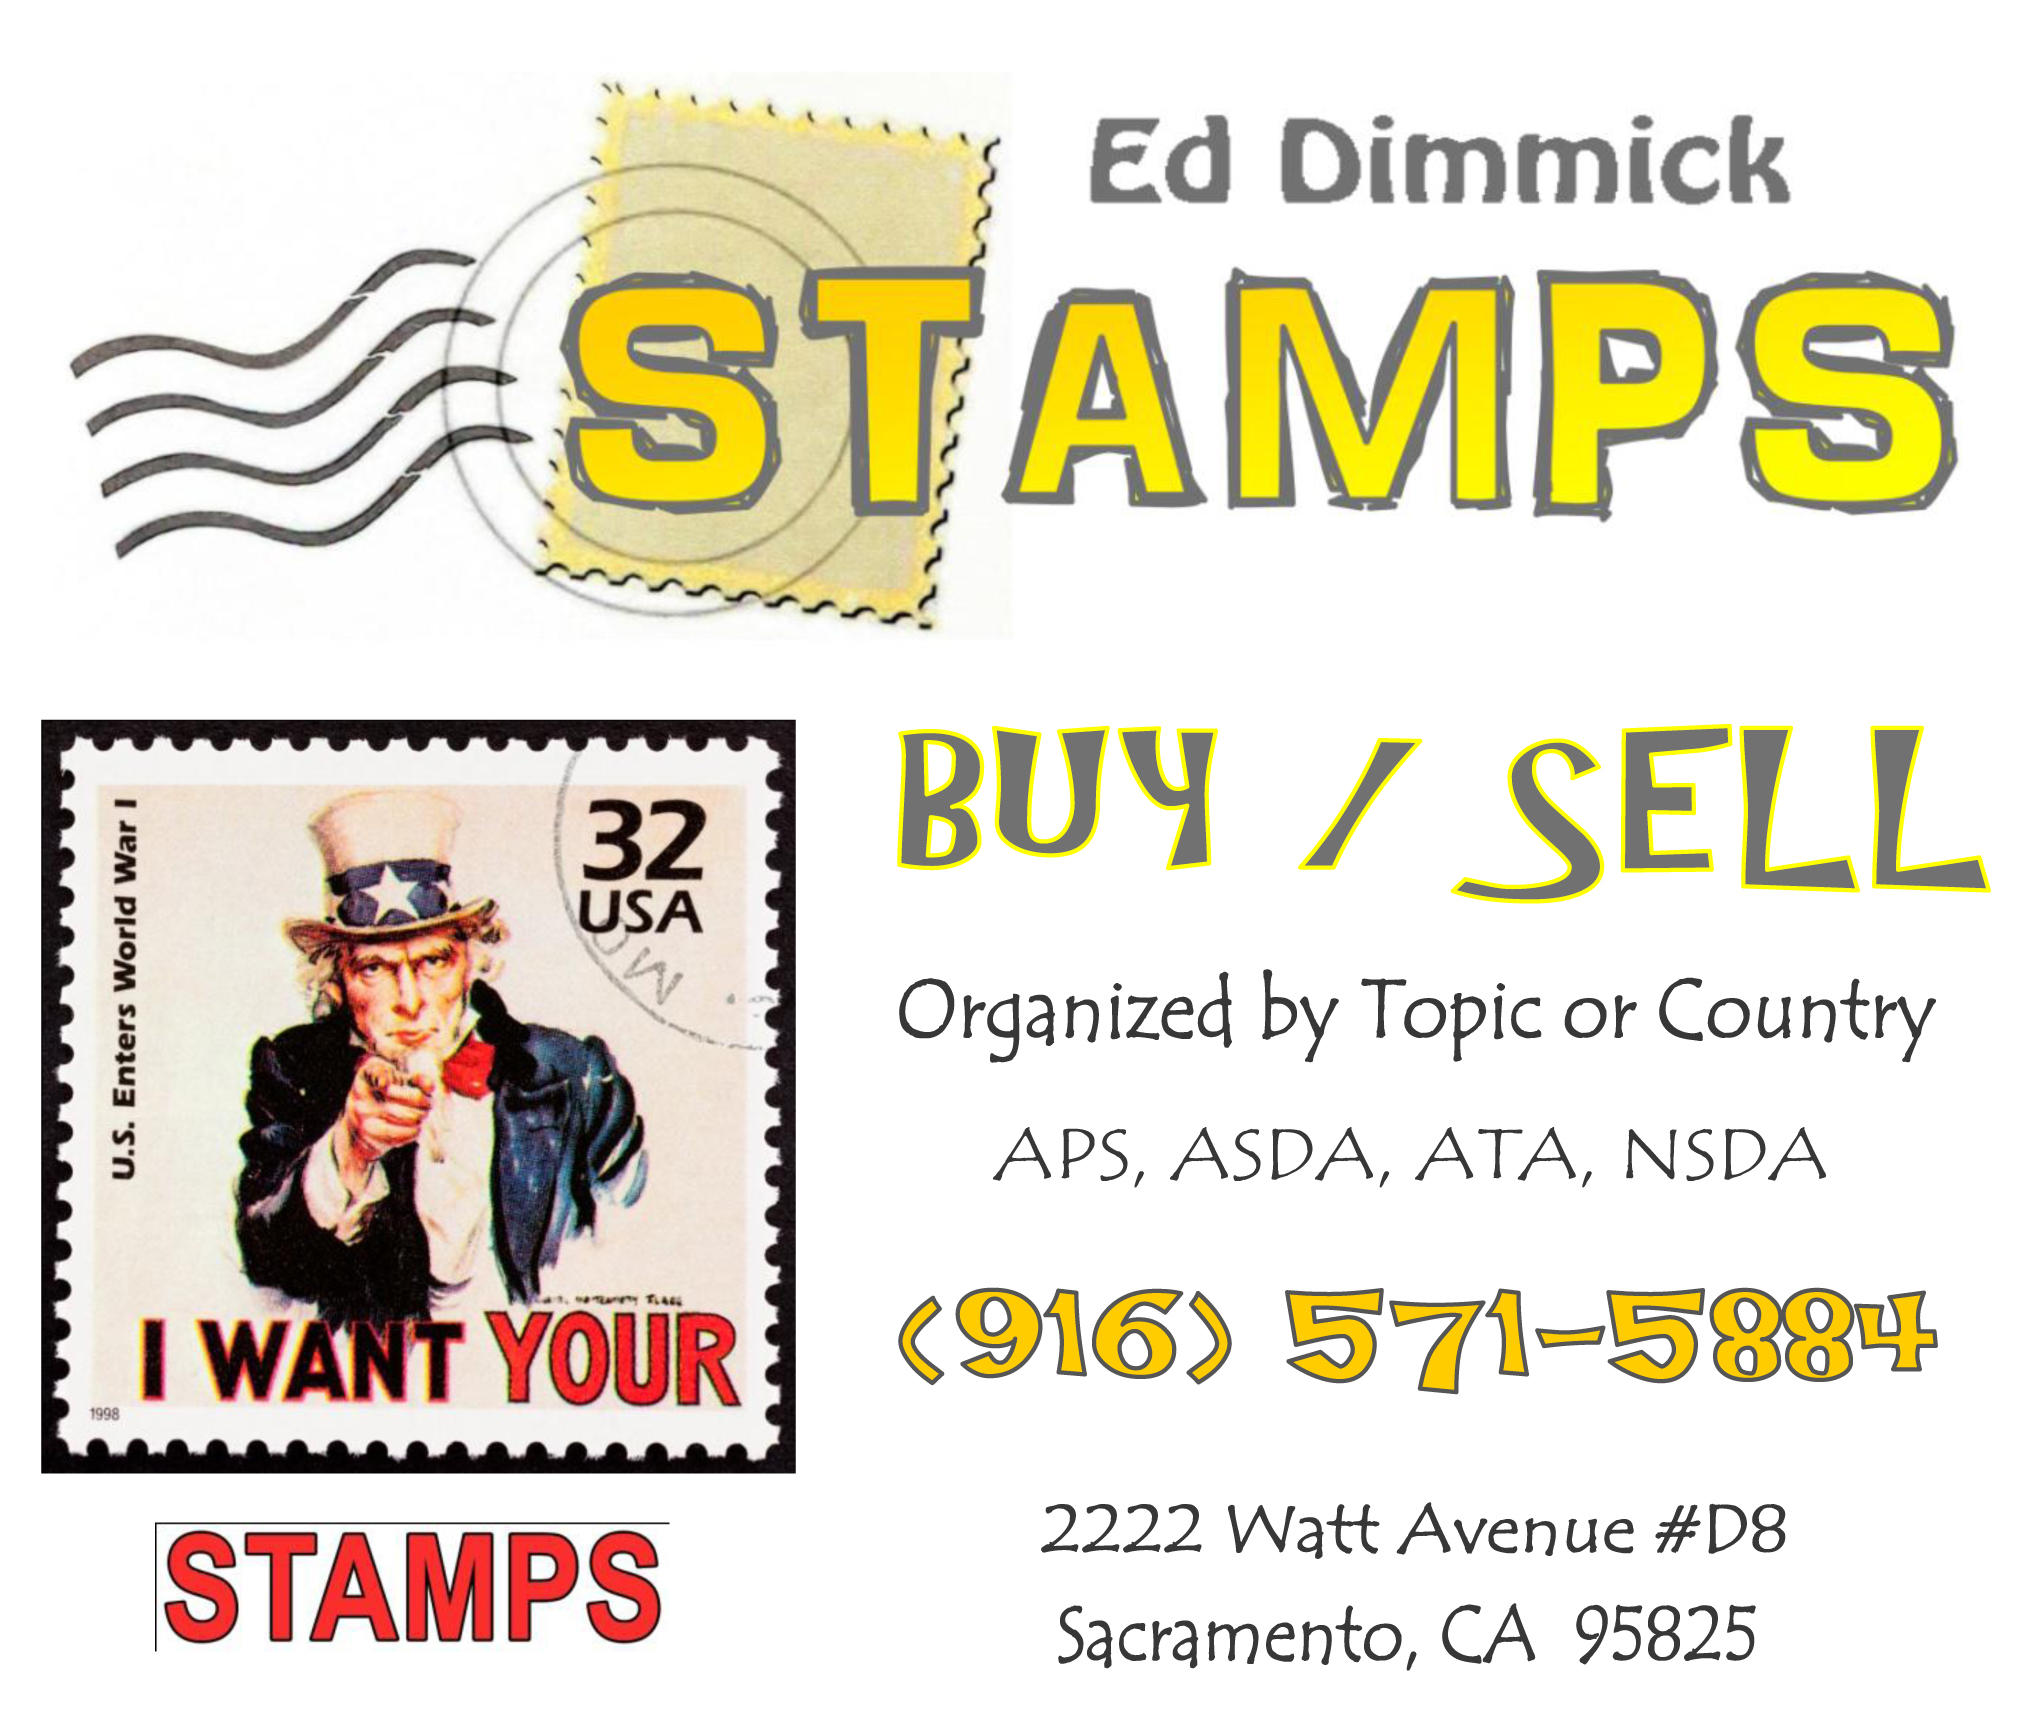 Ed Dimmick Stamps - Sacramento, CA 95821 - (916)571-5884 | ShowMeLocal.com